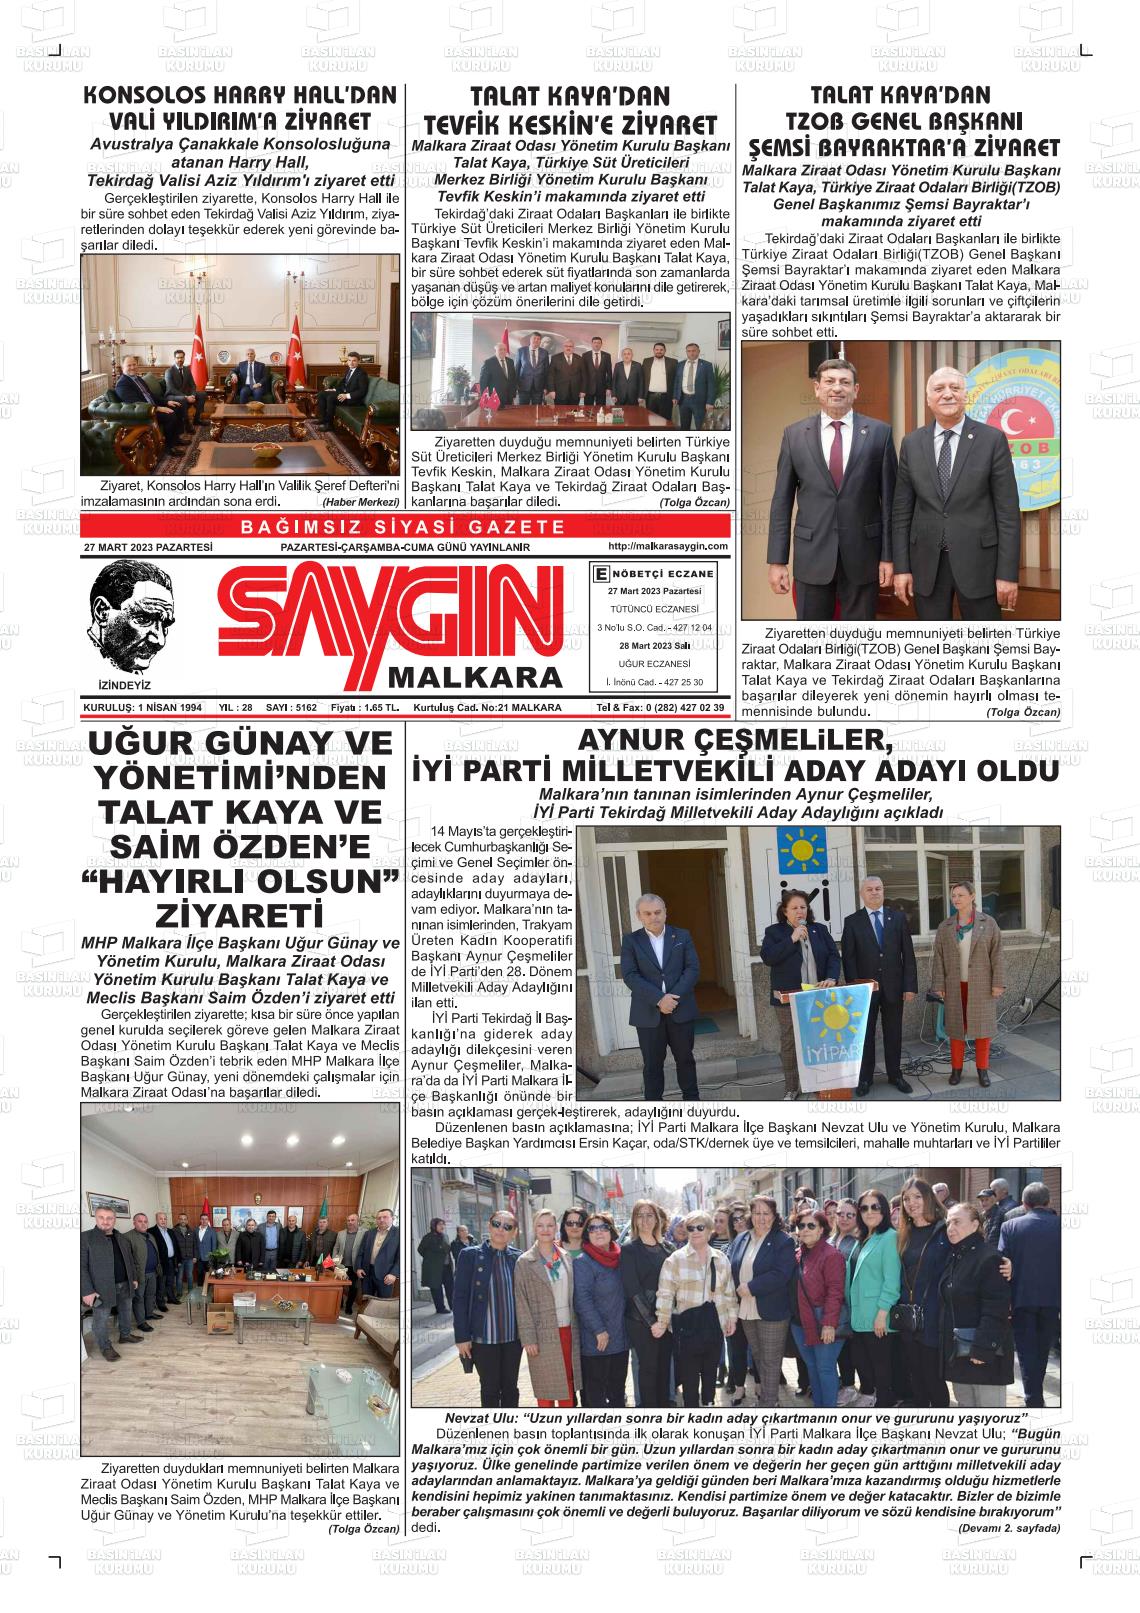 27 Mart 2023 Saygın Malkara Gazete Manşeti